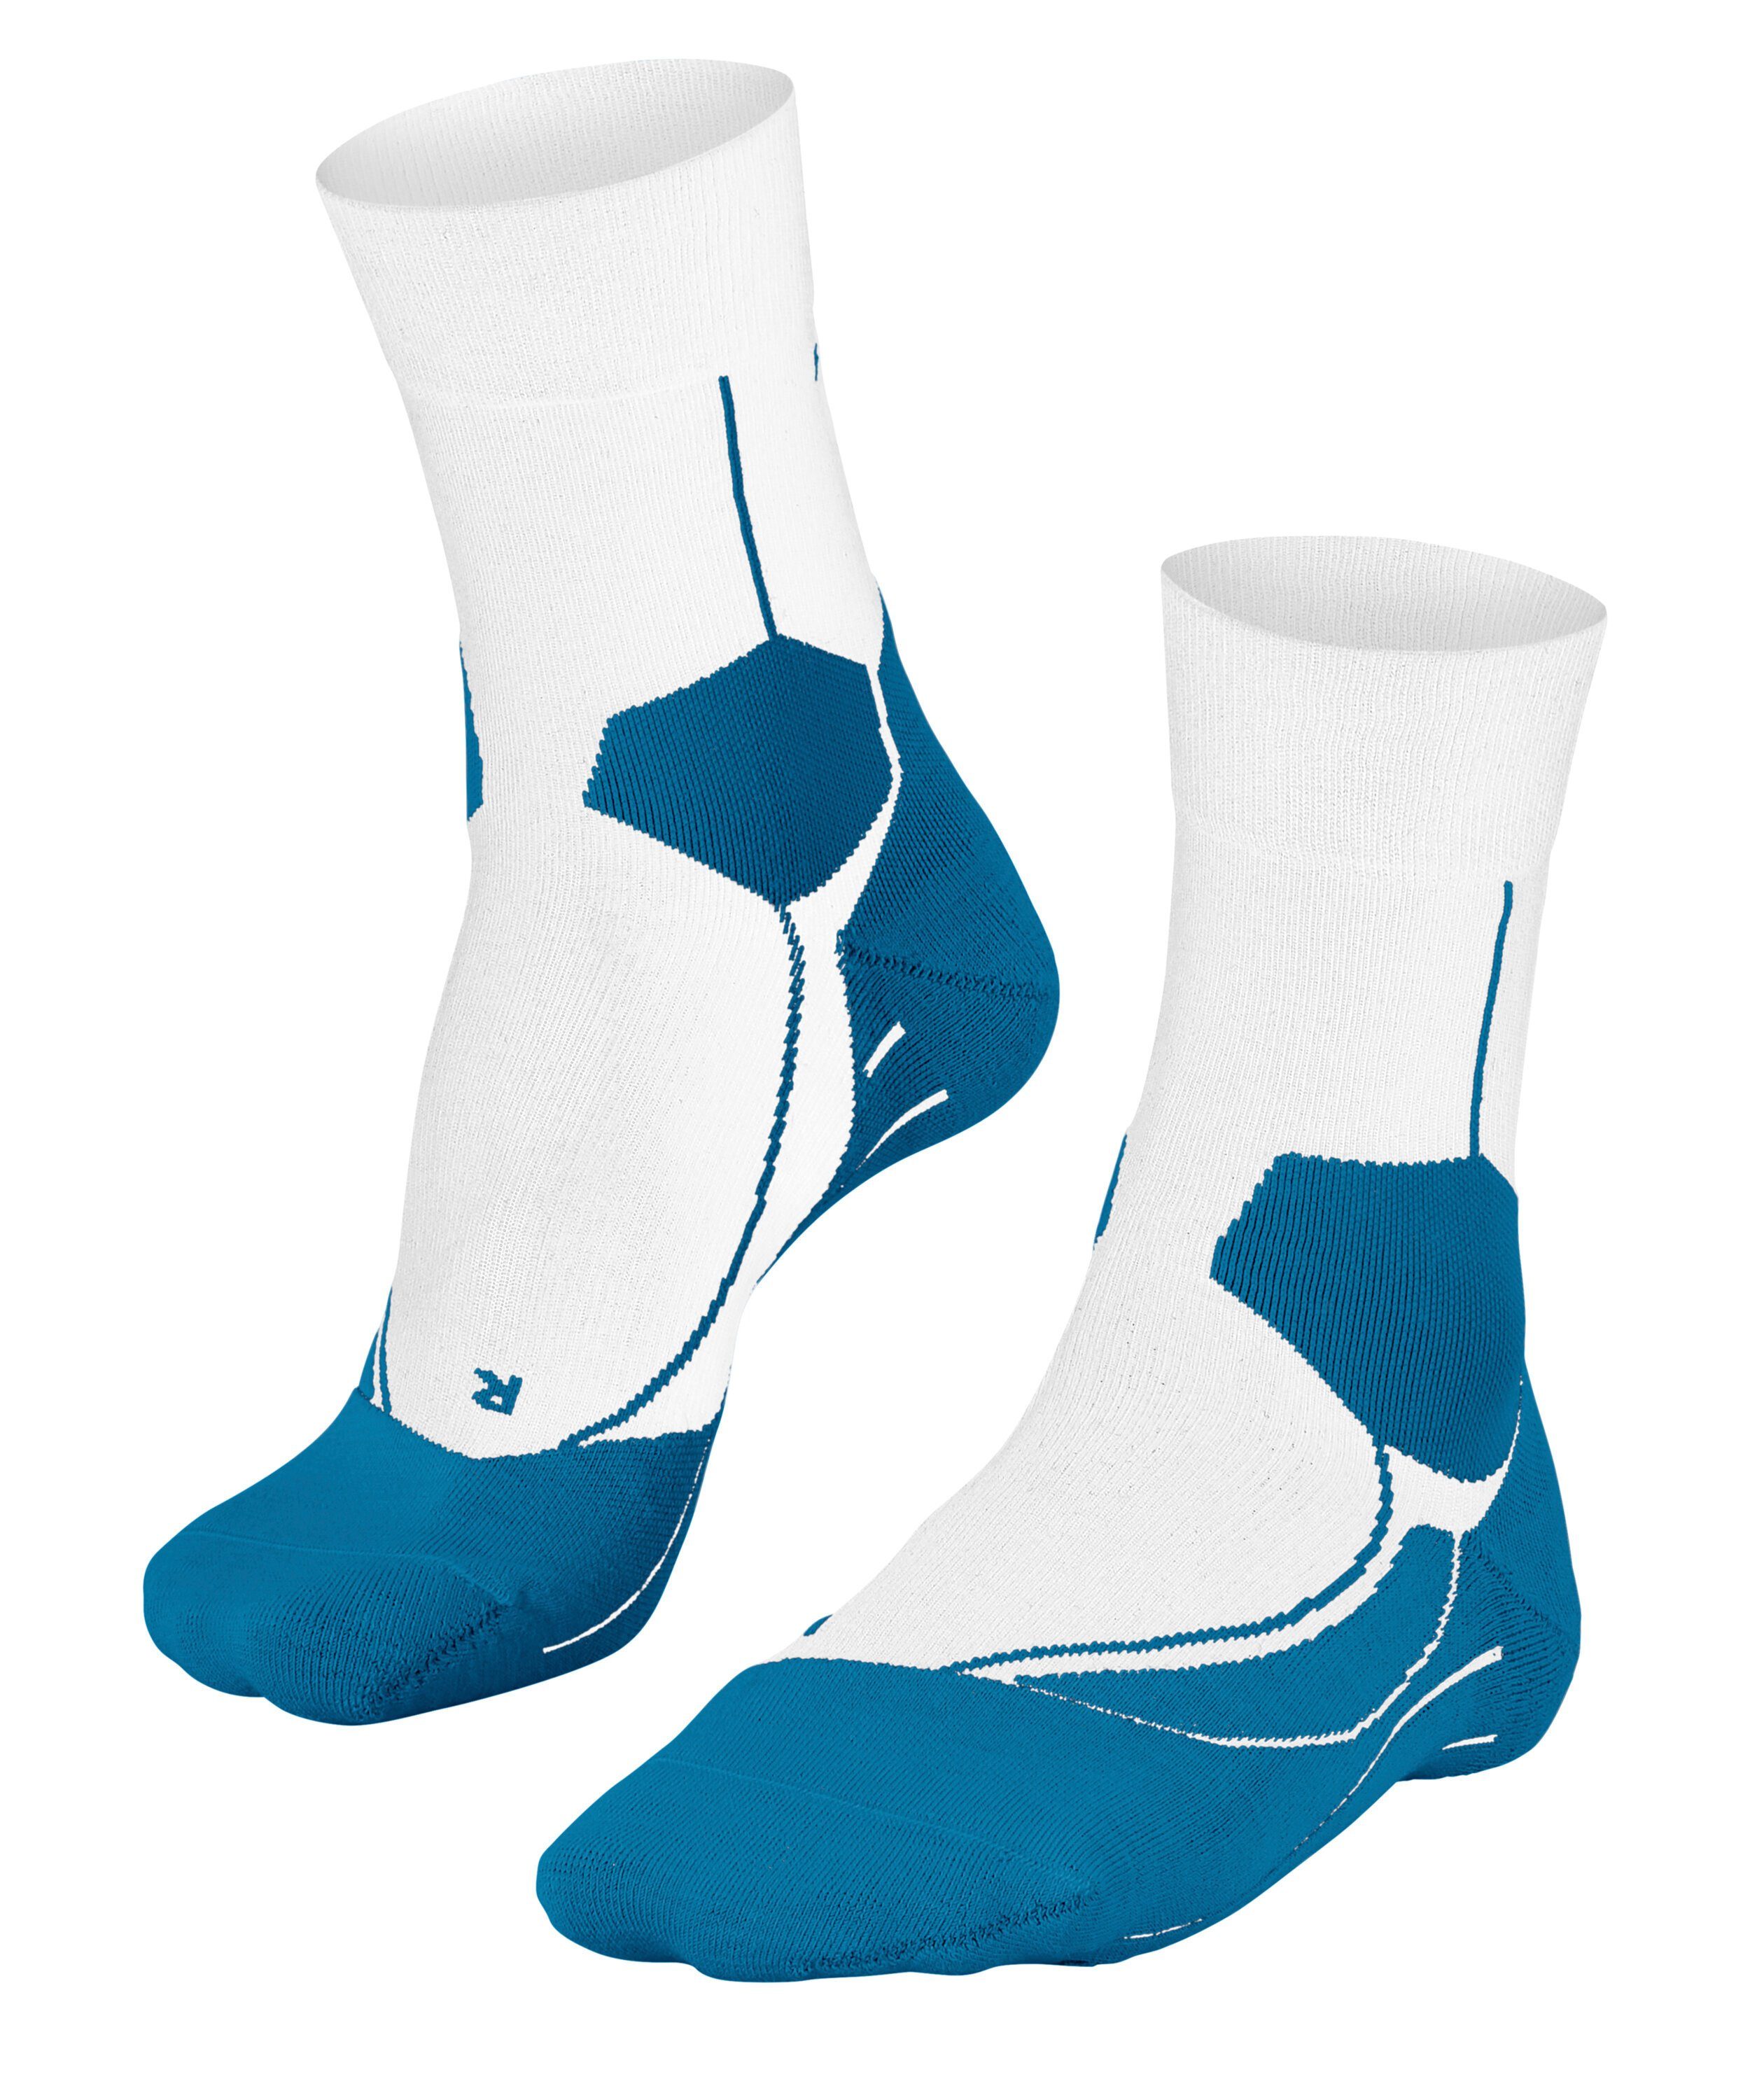 FALKE Спортивные носки Stabilizing Cool erhöht die Stabilität und verringert das Verletzungsrisiko